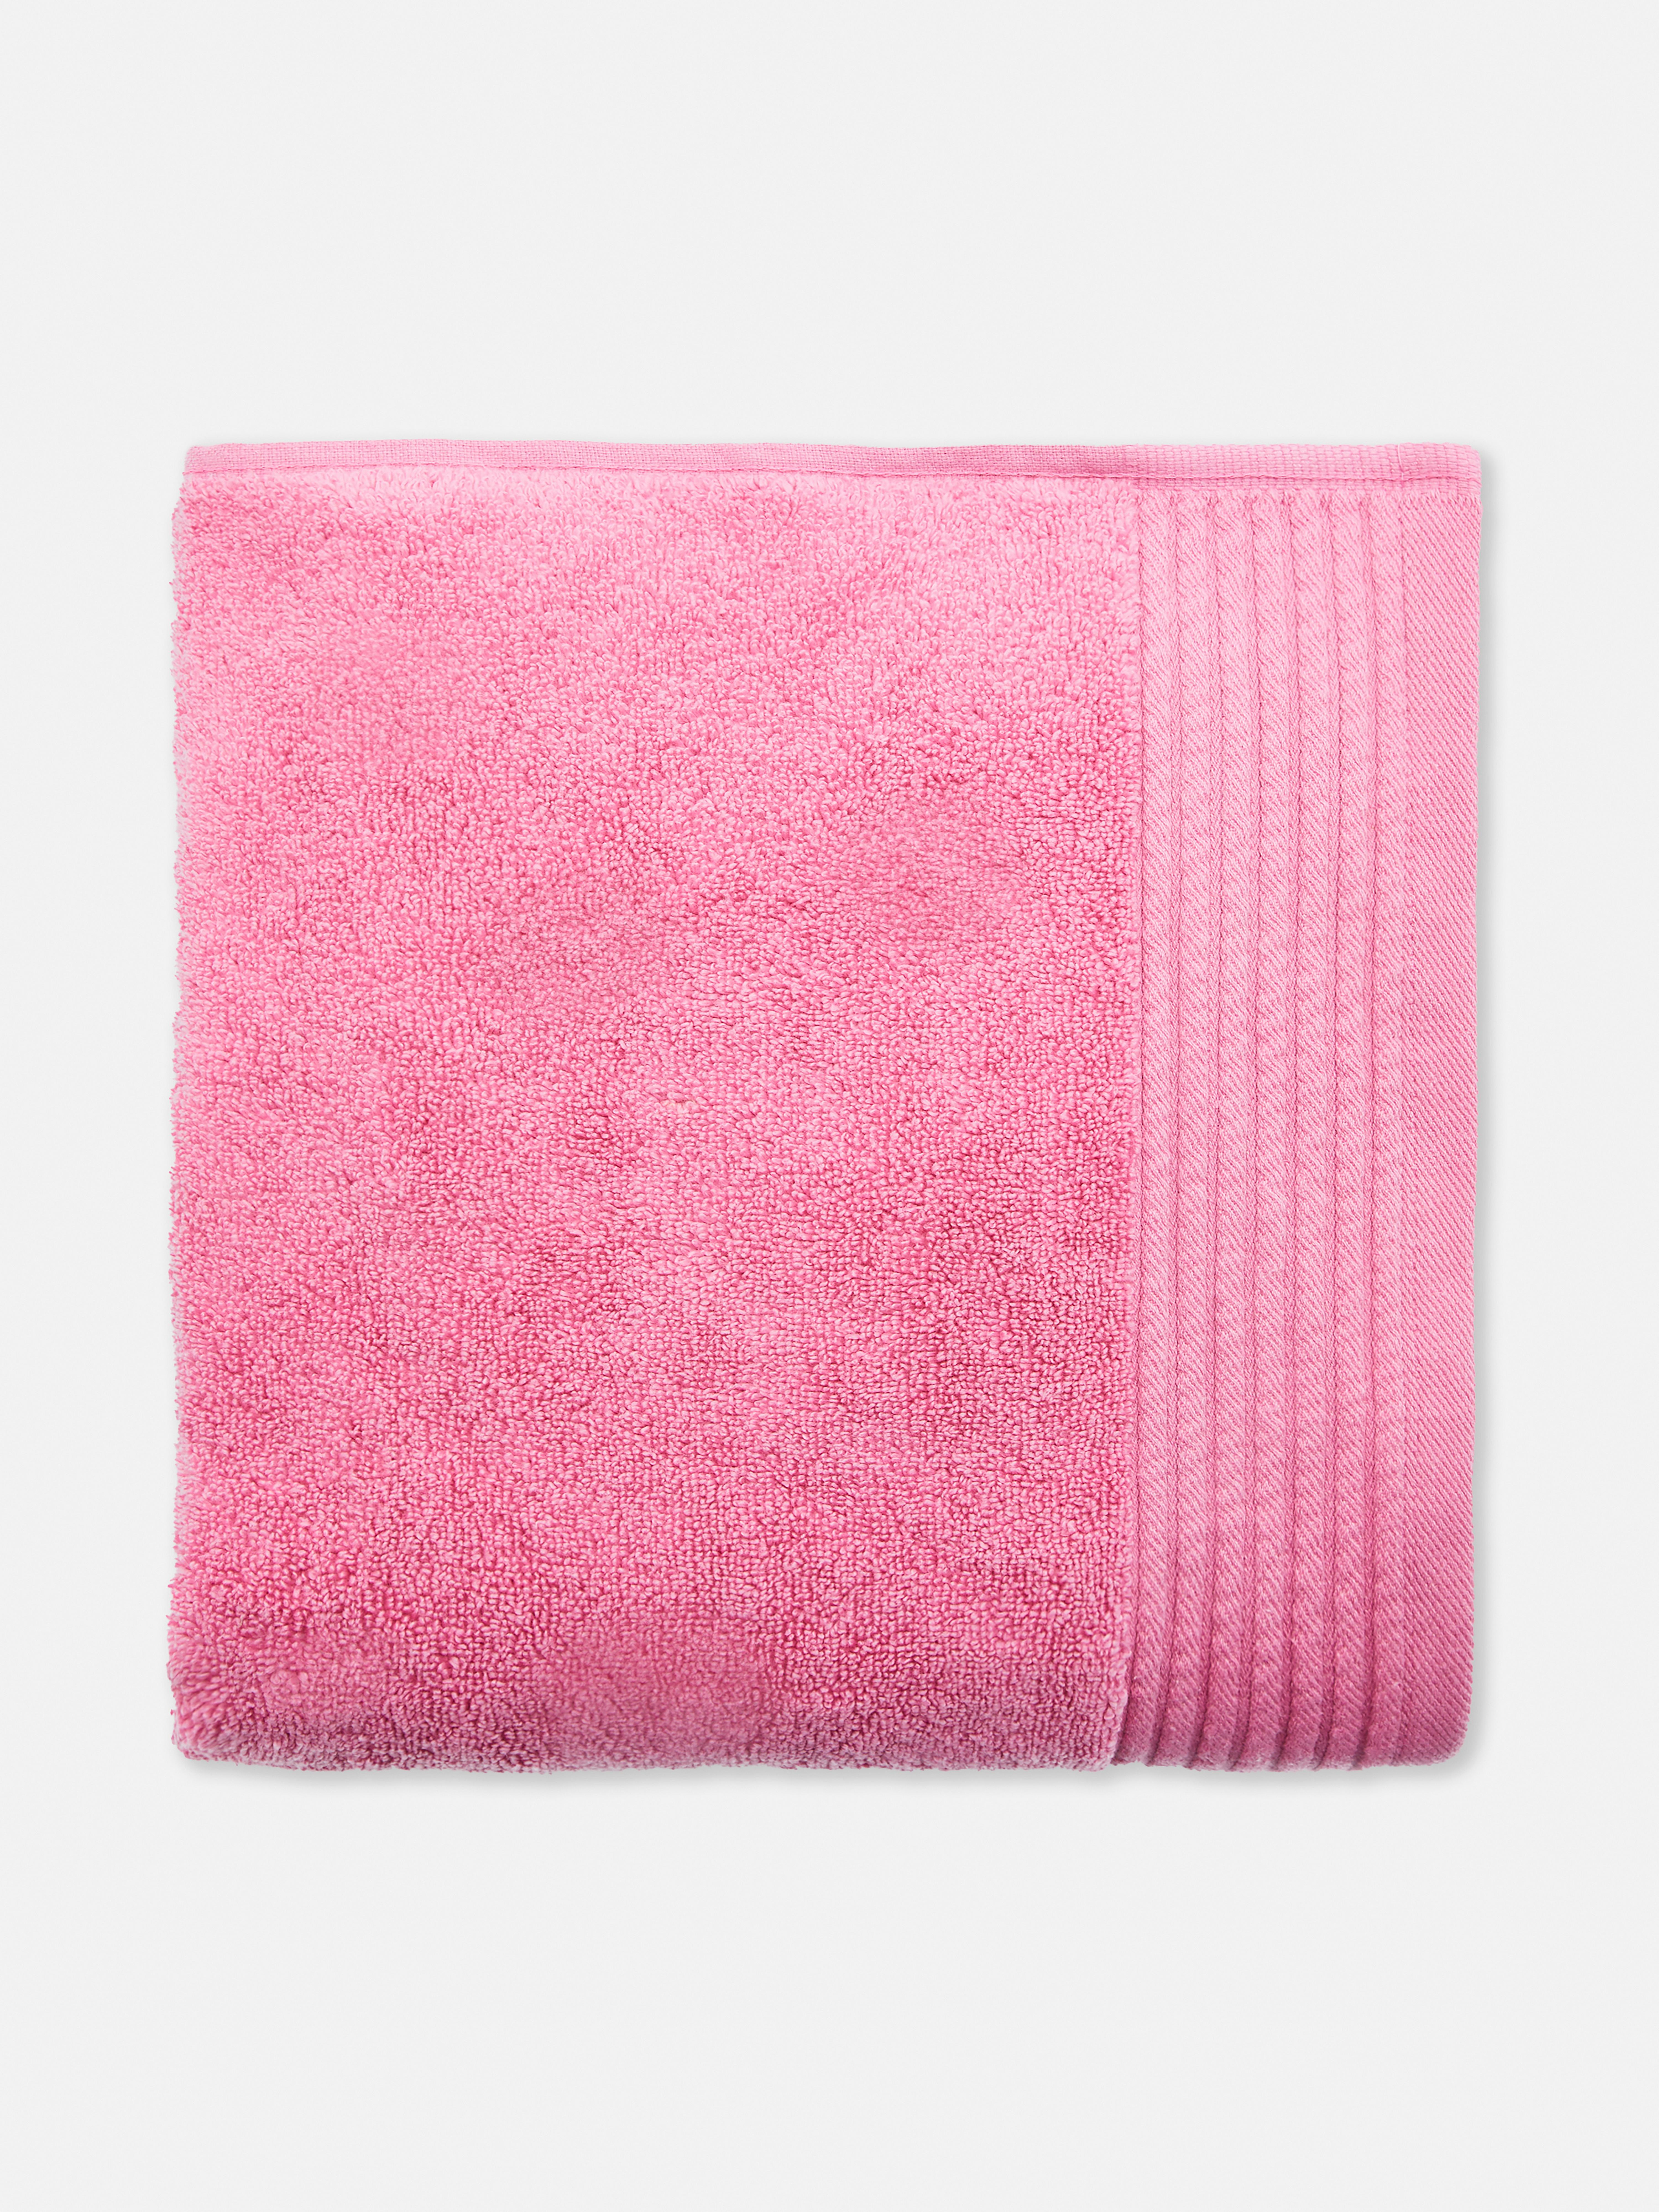 Rožnata izredno mehka velika kopalna brisača